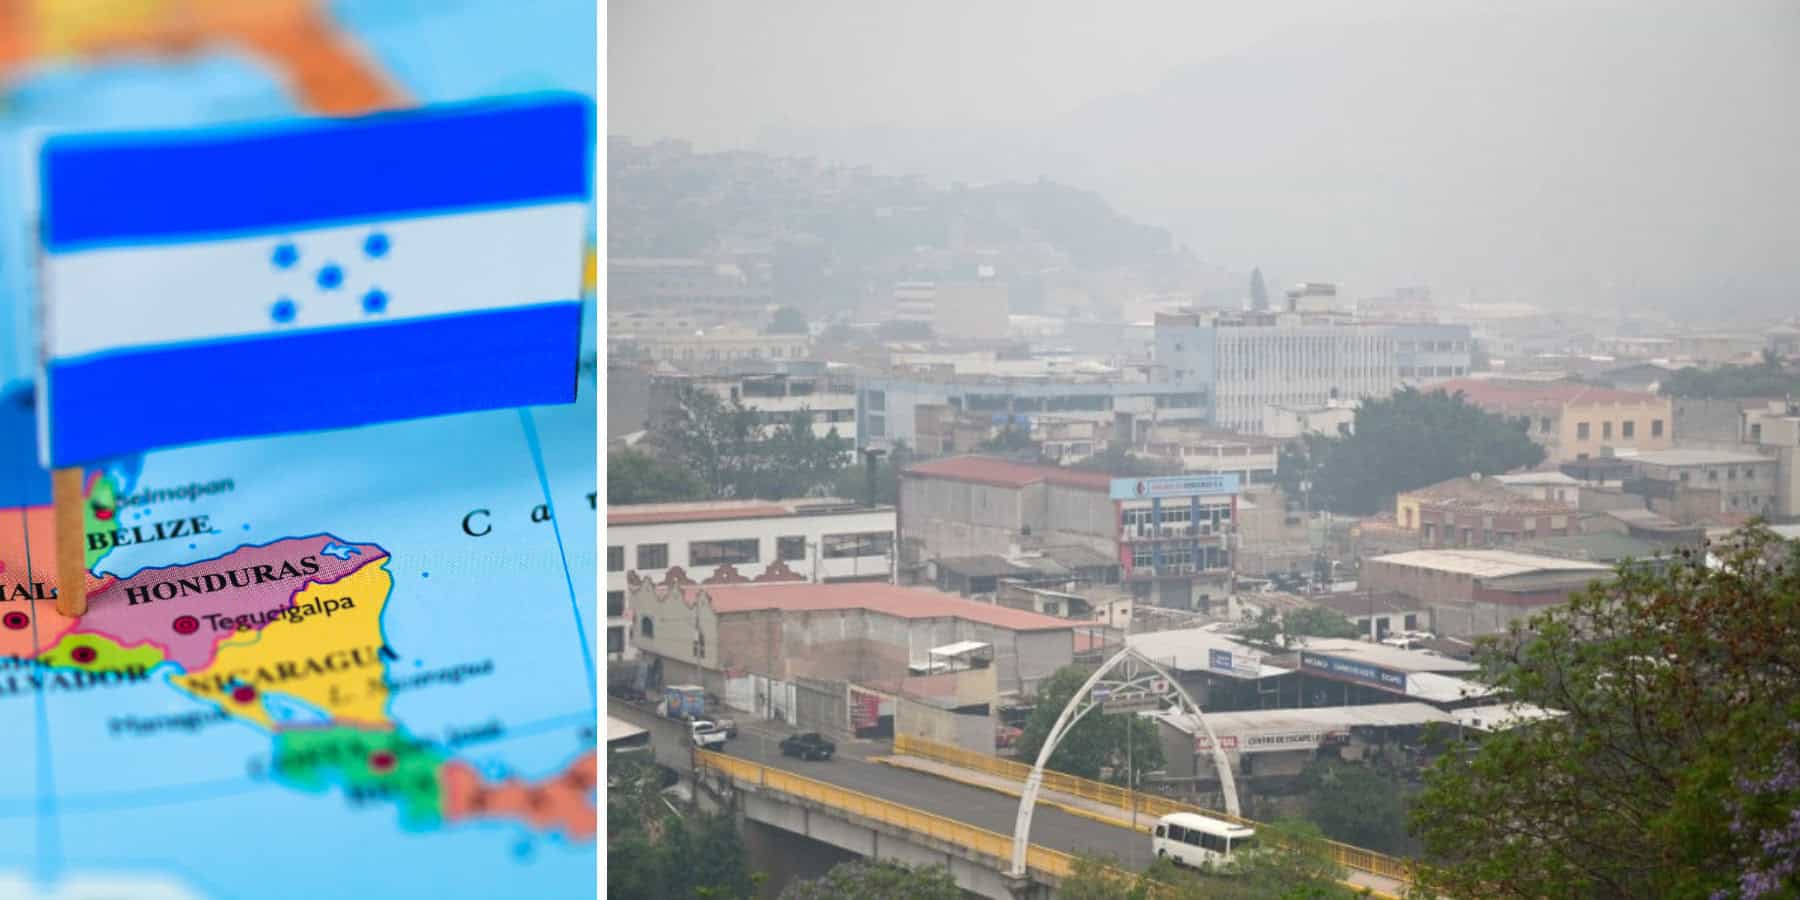 Tutaj powietrze zabija. Miasto w Hondurasie przebija normy zanieczyszczeń WHO 50-krotnie